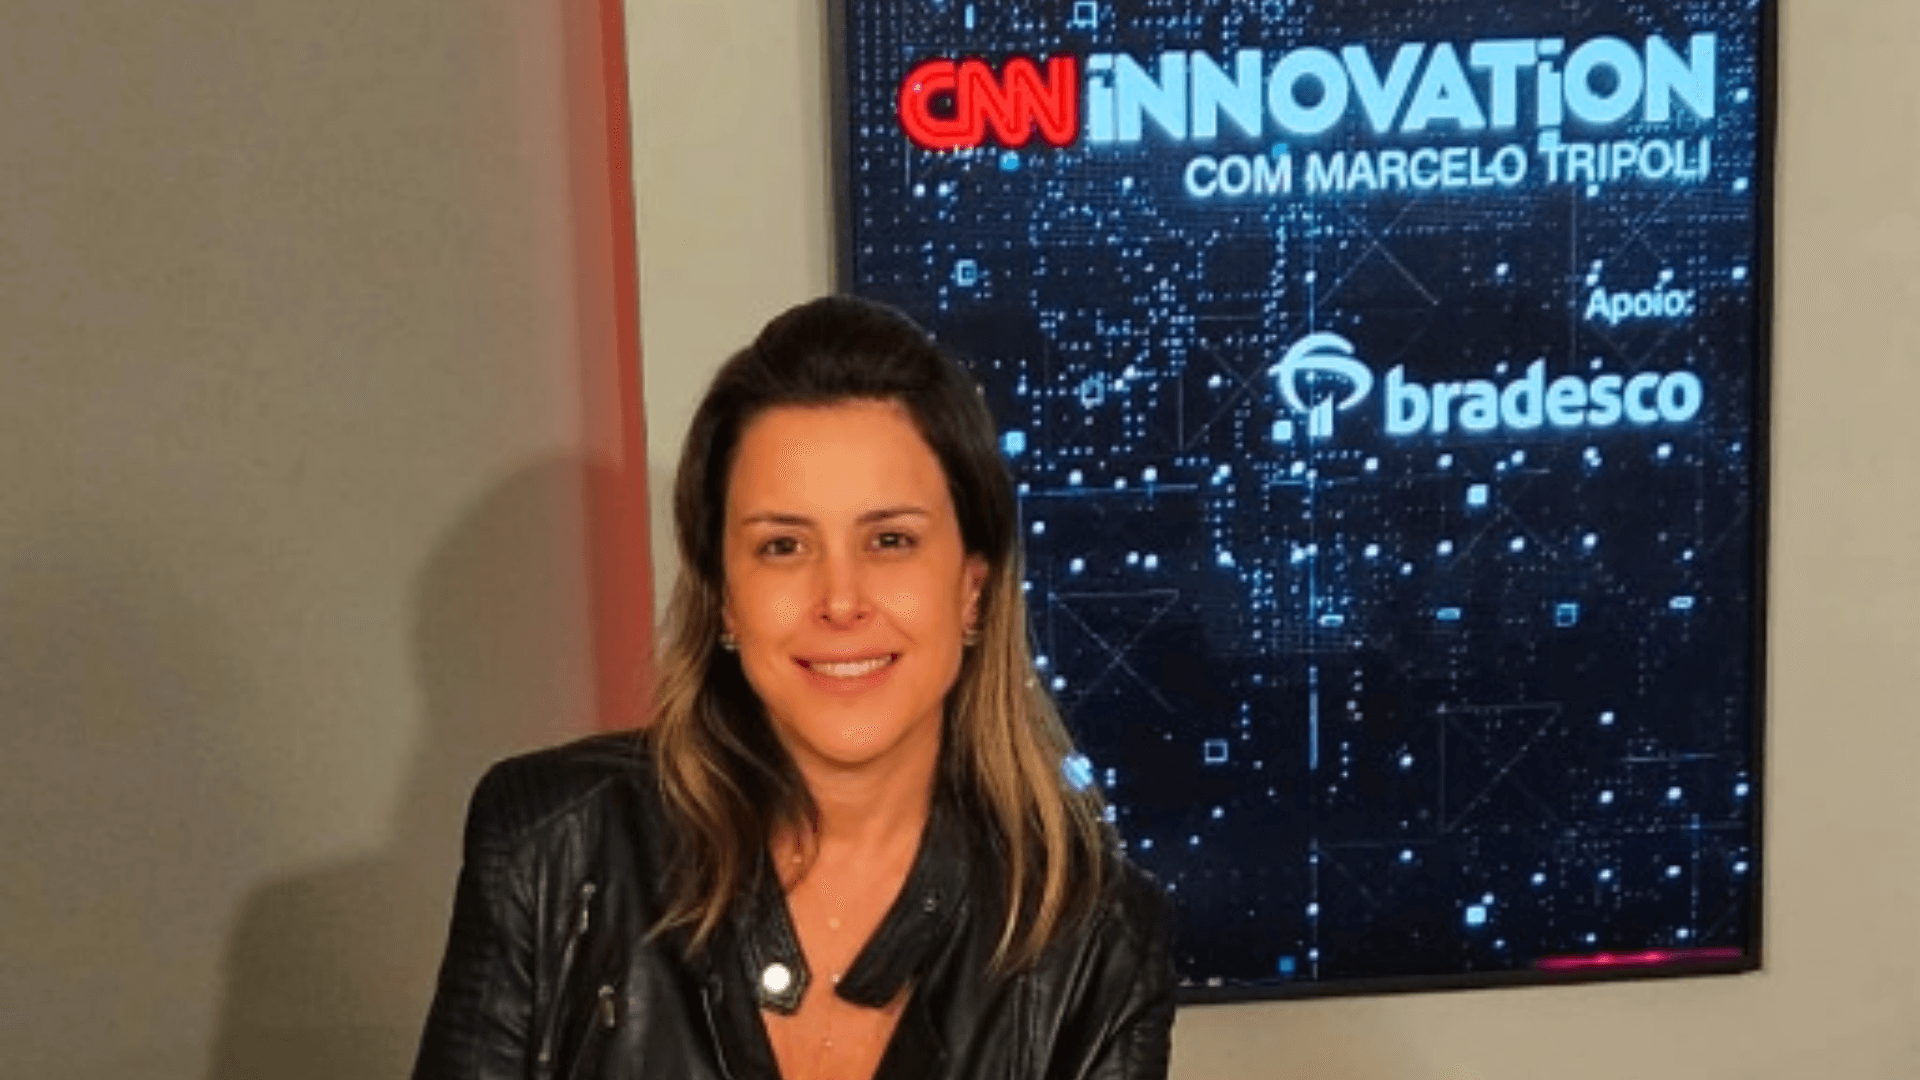 Bradesco e CNN Brasil firmam parceria estratégica para cobertura do SXSW